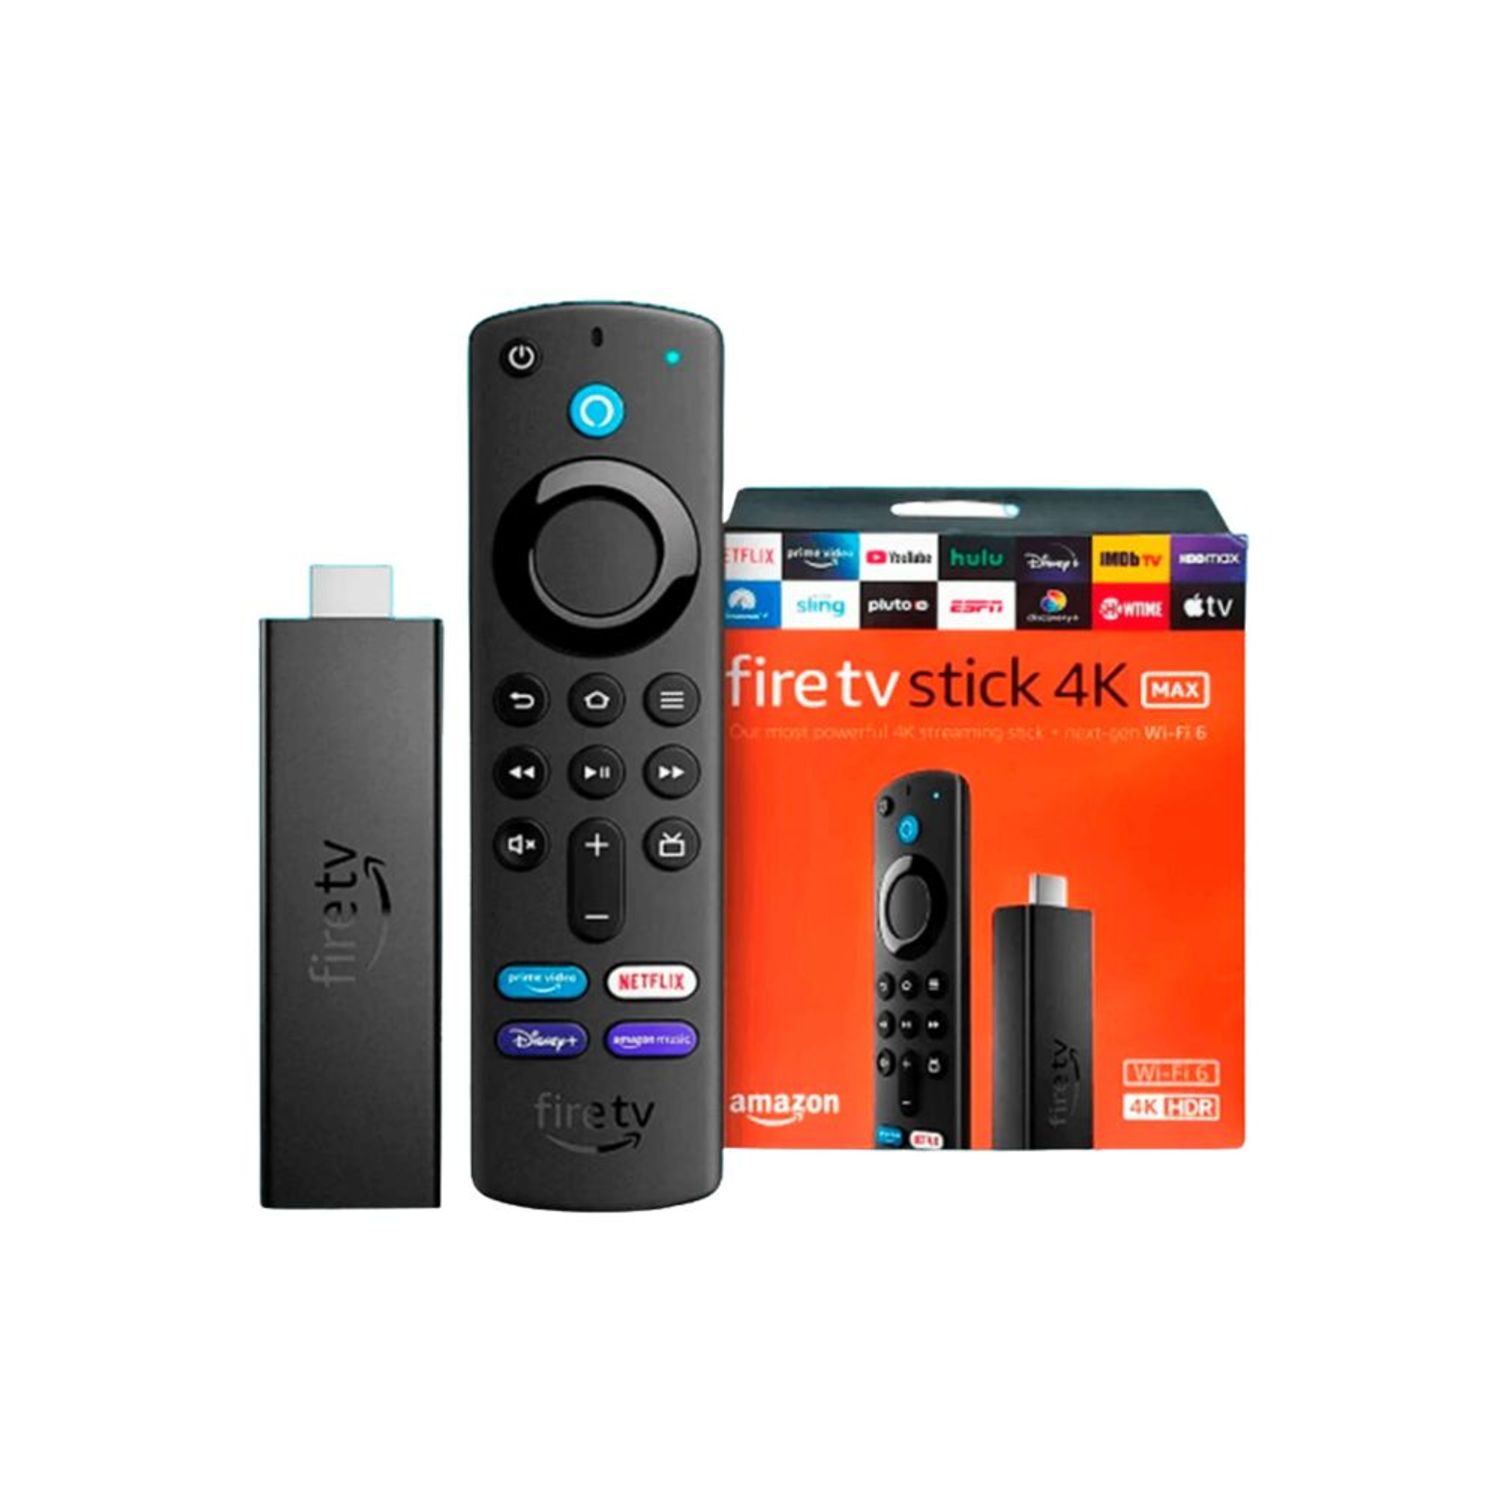 Así es el nuevo  Fire TV Stick 4K con Alexa